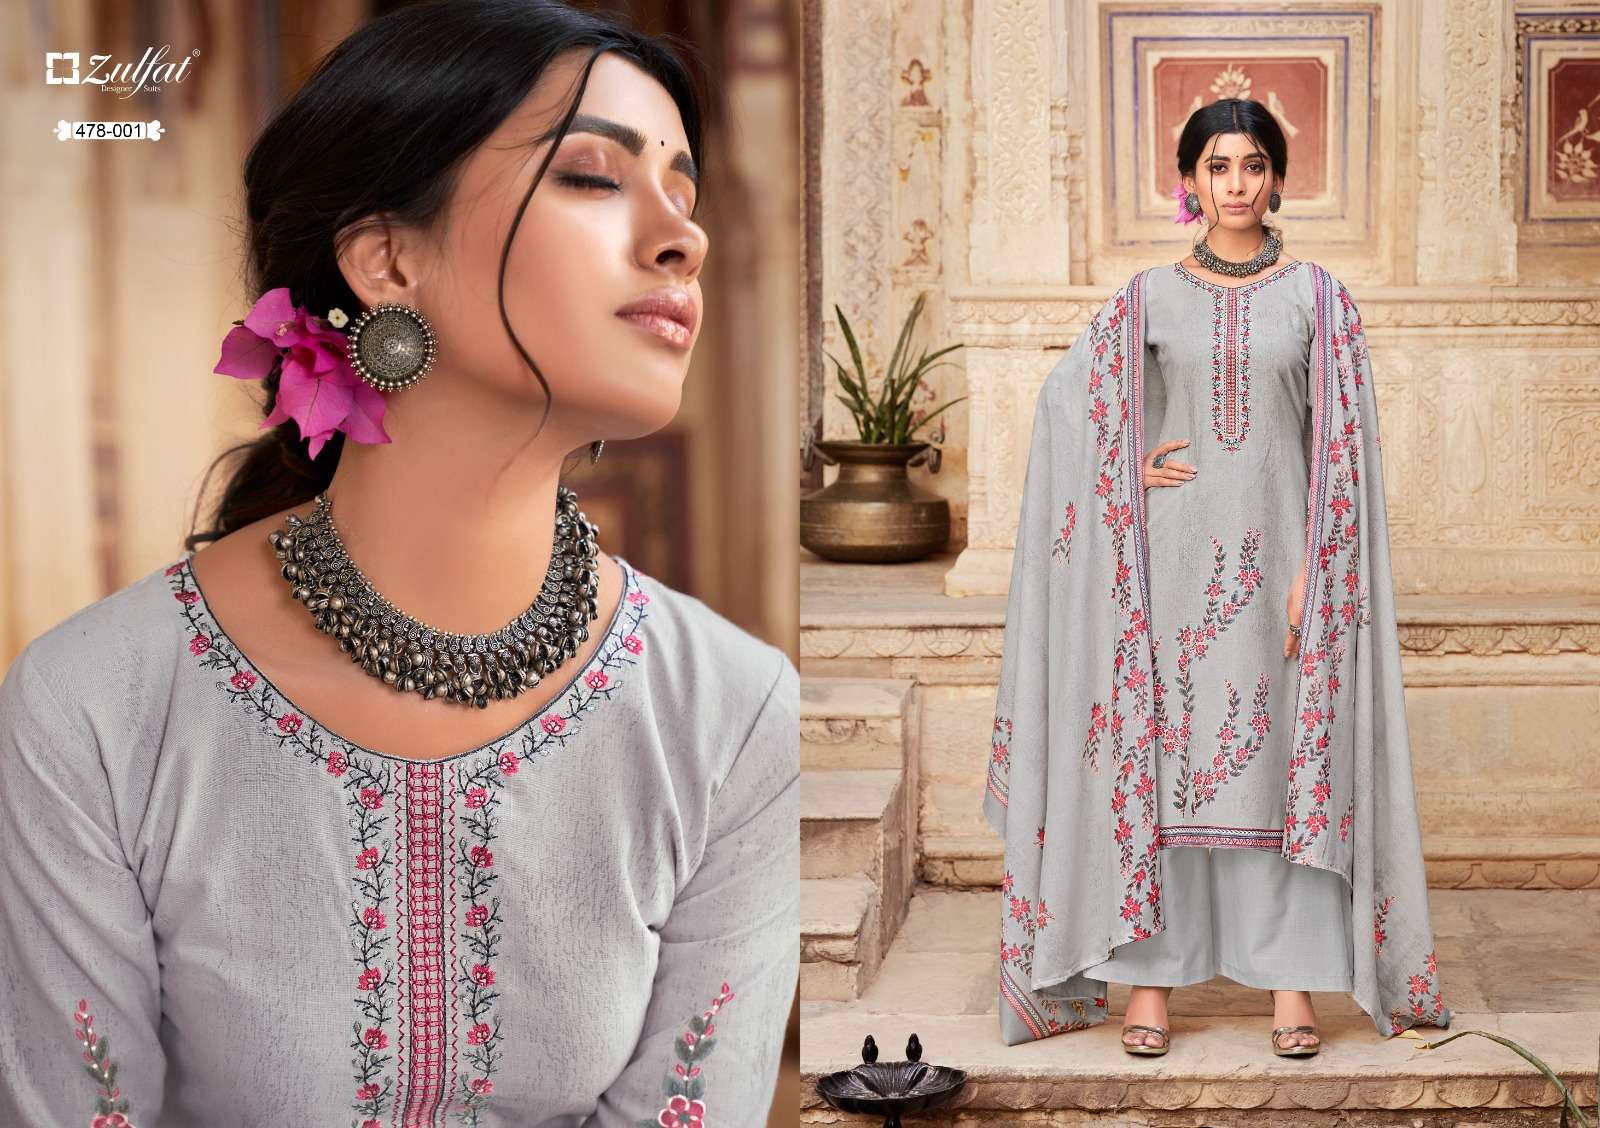 zulfat designer suits summer shades unstich designer salwar kameez catalogue wholesale price surat